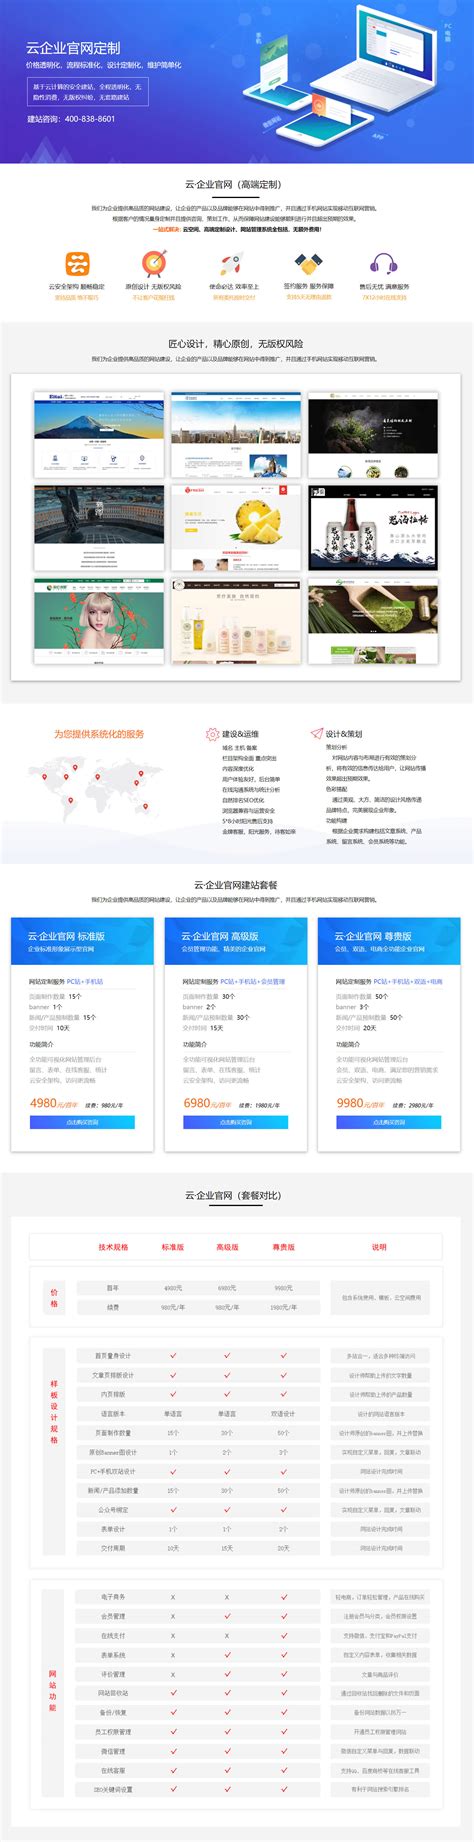 南京外贸网站建设方案优化